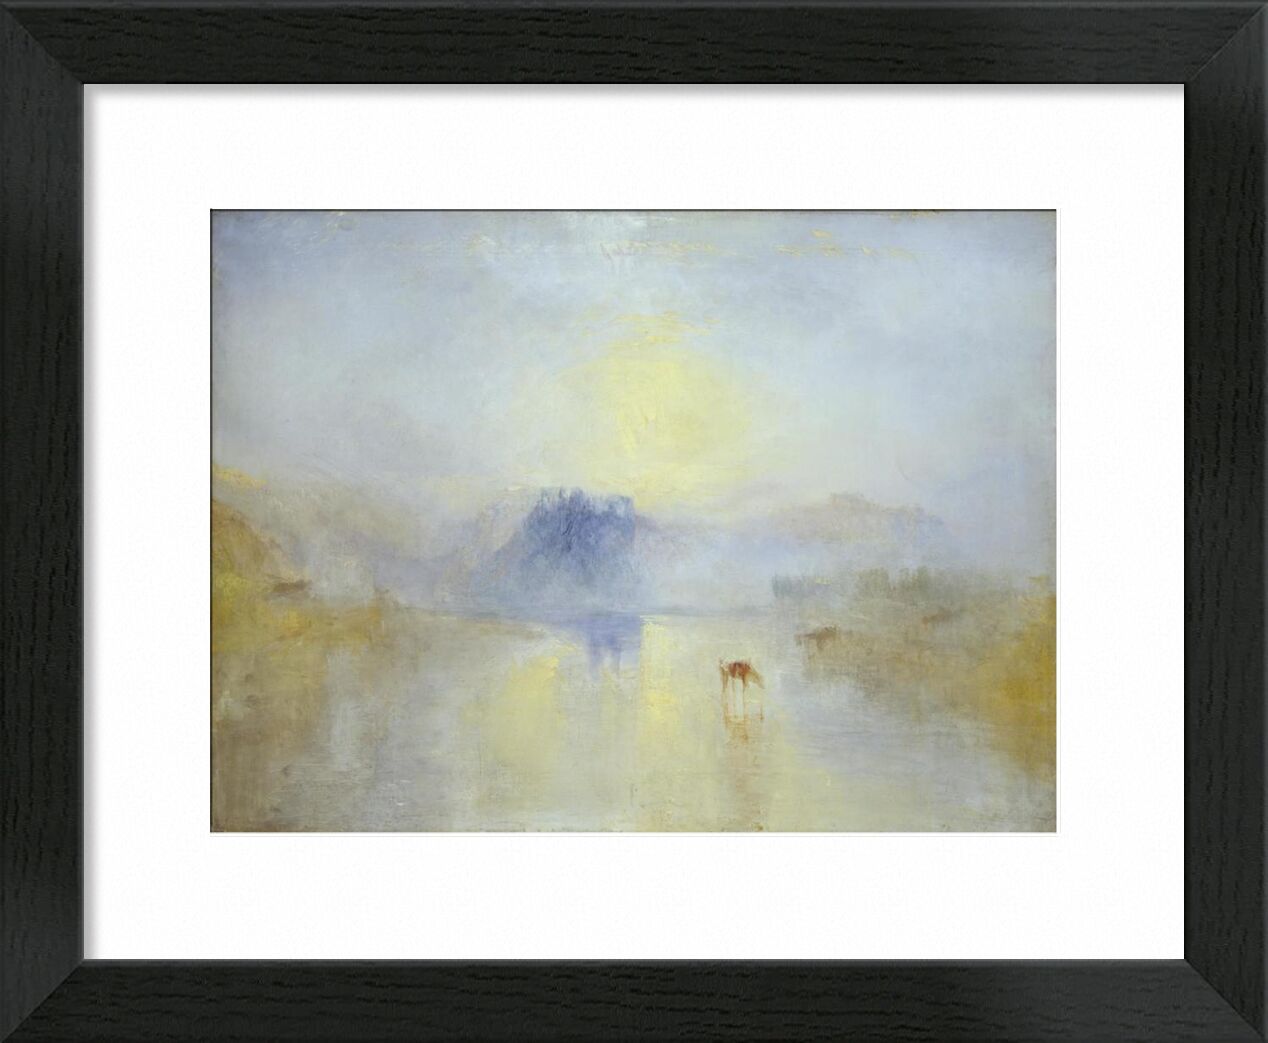 Norham Castle, Sunrise - WILLIAM TURNER 1845 desde Bellas artes, Prodi Art, Norham, amanecer, pintura, WILLIAM TURNER, Inglaterra, caballos, castillo